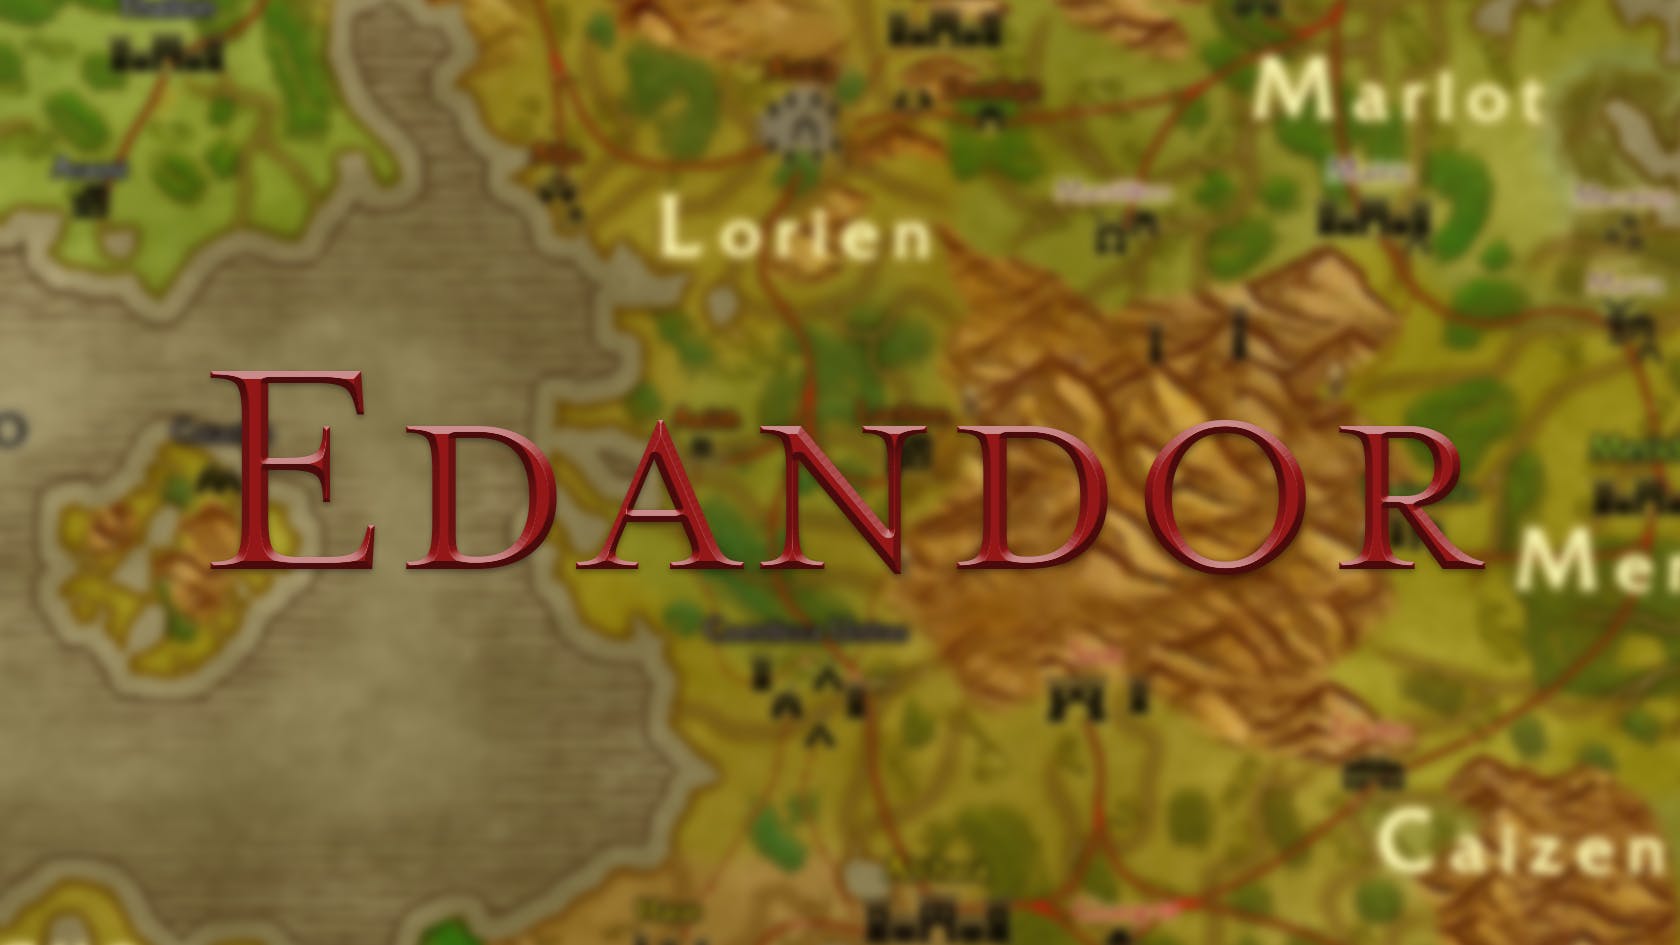 Edandor - An adventure of your own